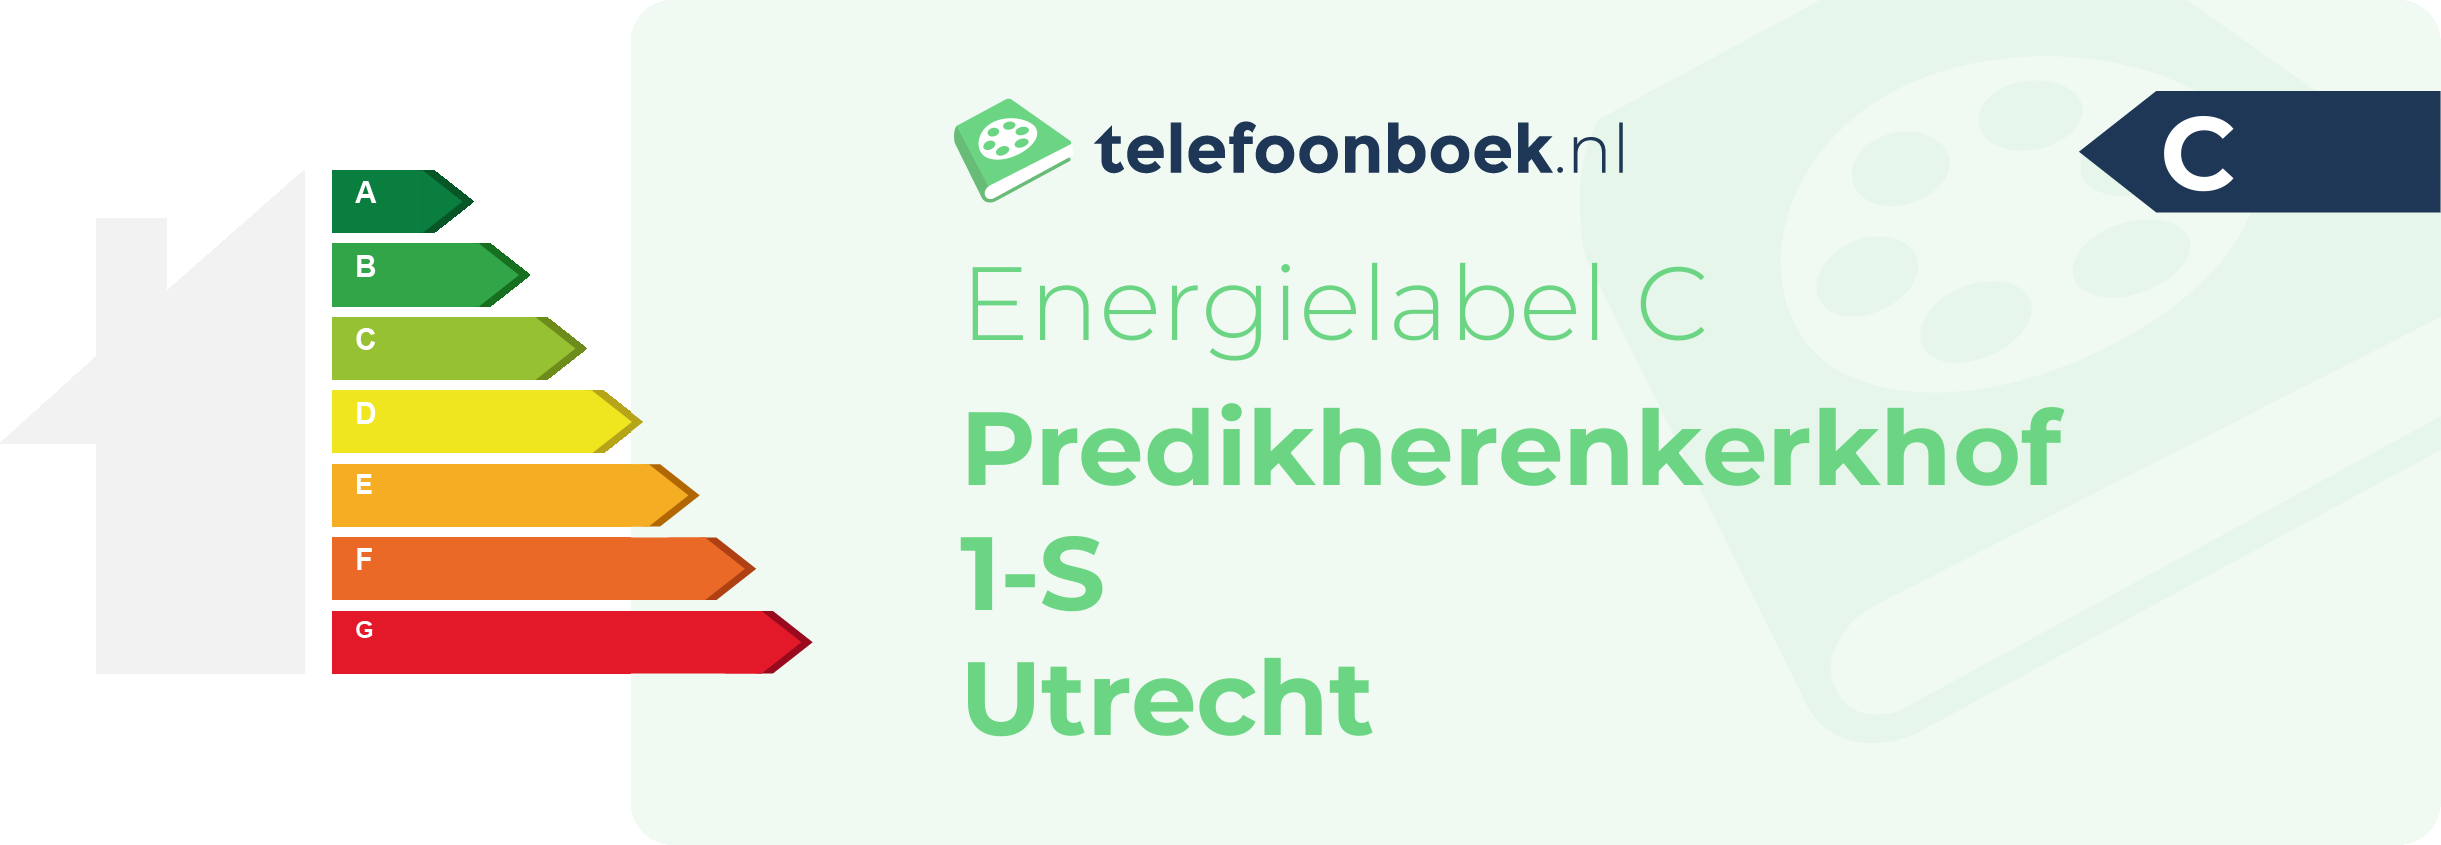 Energielabel Predikherenkerkhof 1-S Utrecht